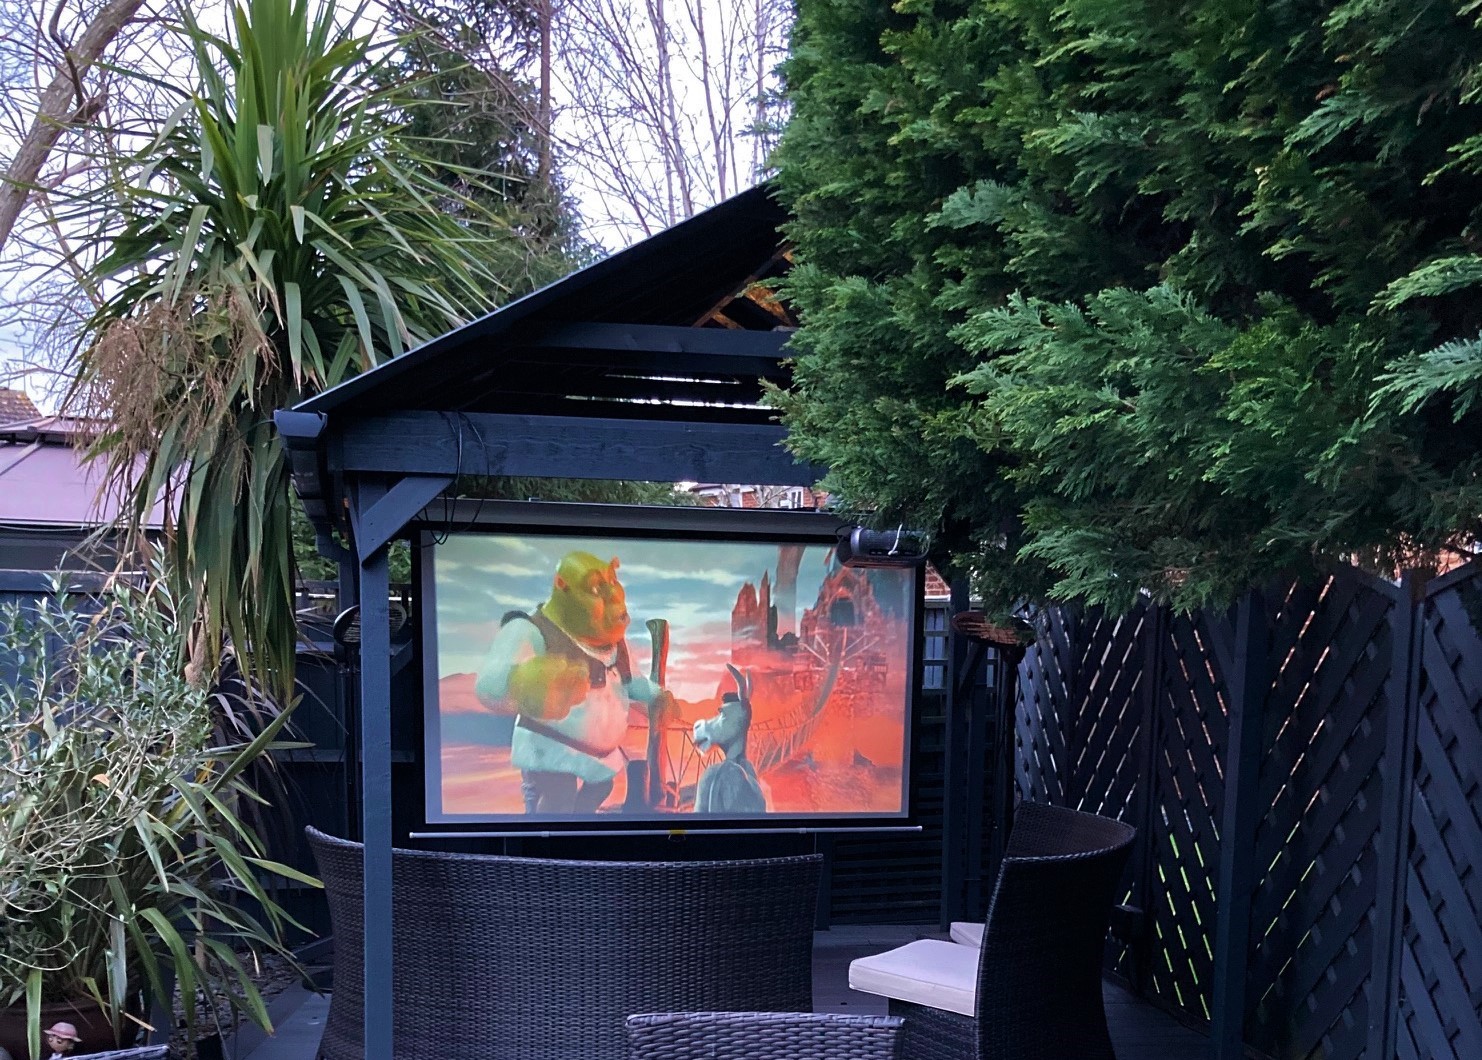 Outdoor Cinema